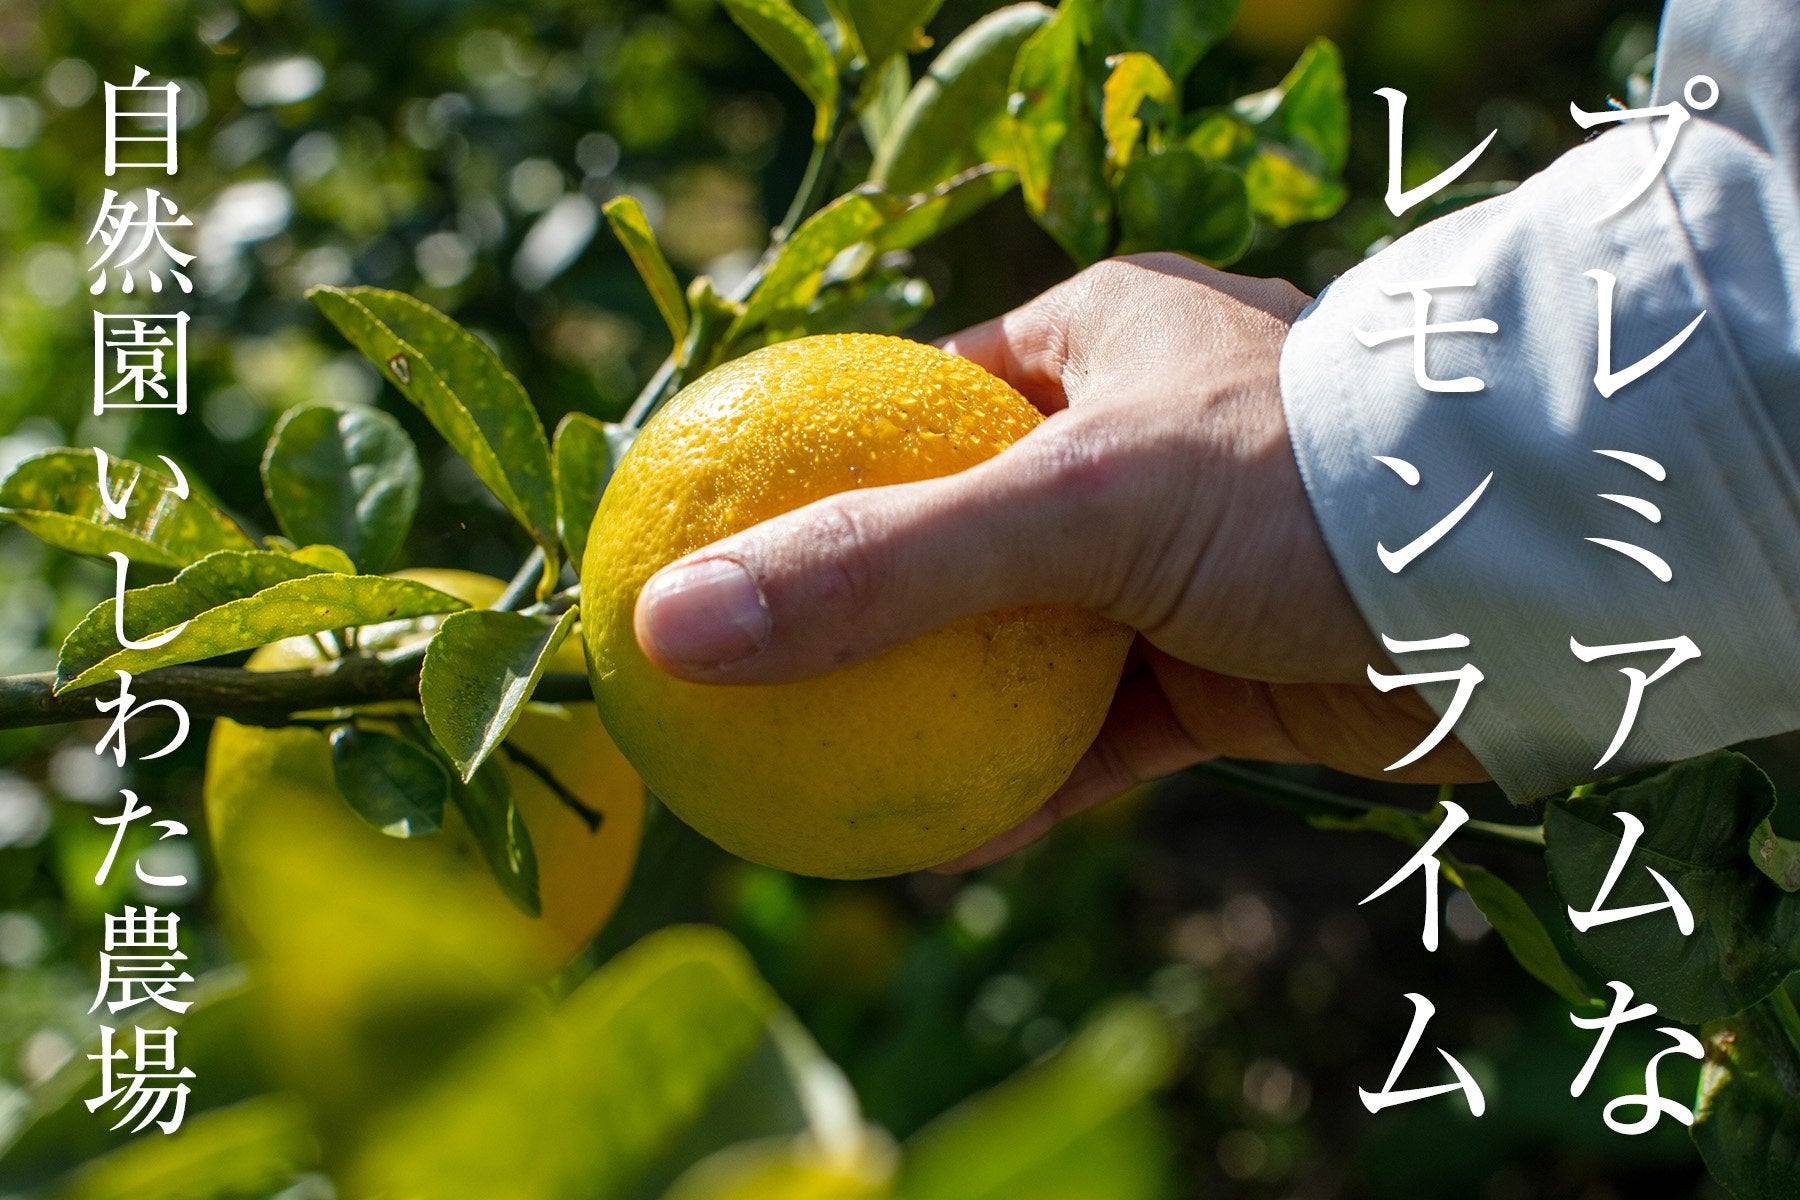 レモンとライムのそれぞれの良さが引き立つ ここにしかない湘南プライムレモンライム 自然園いしわた農場